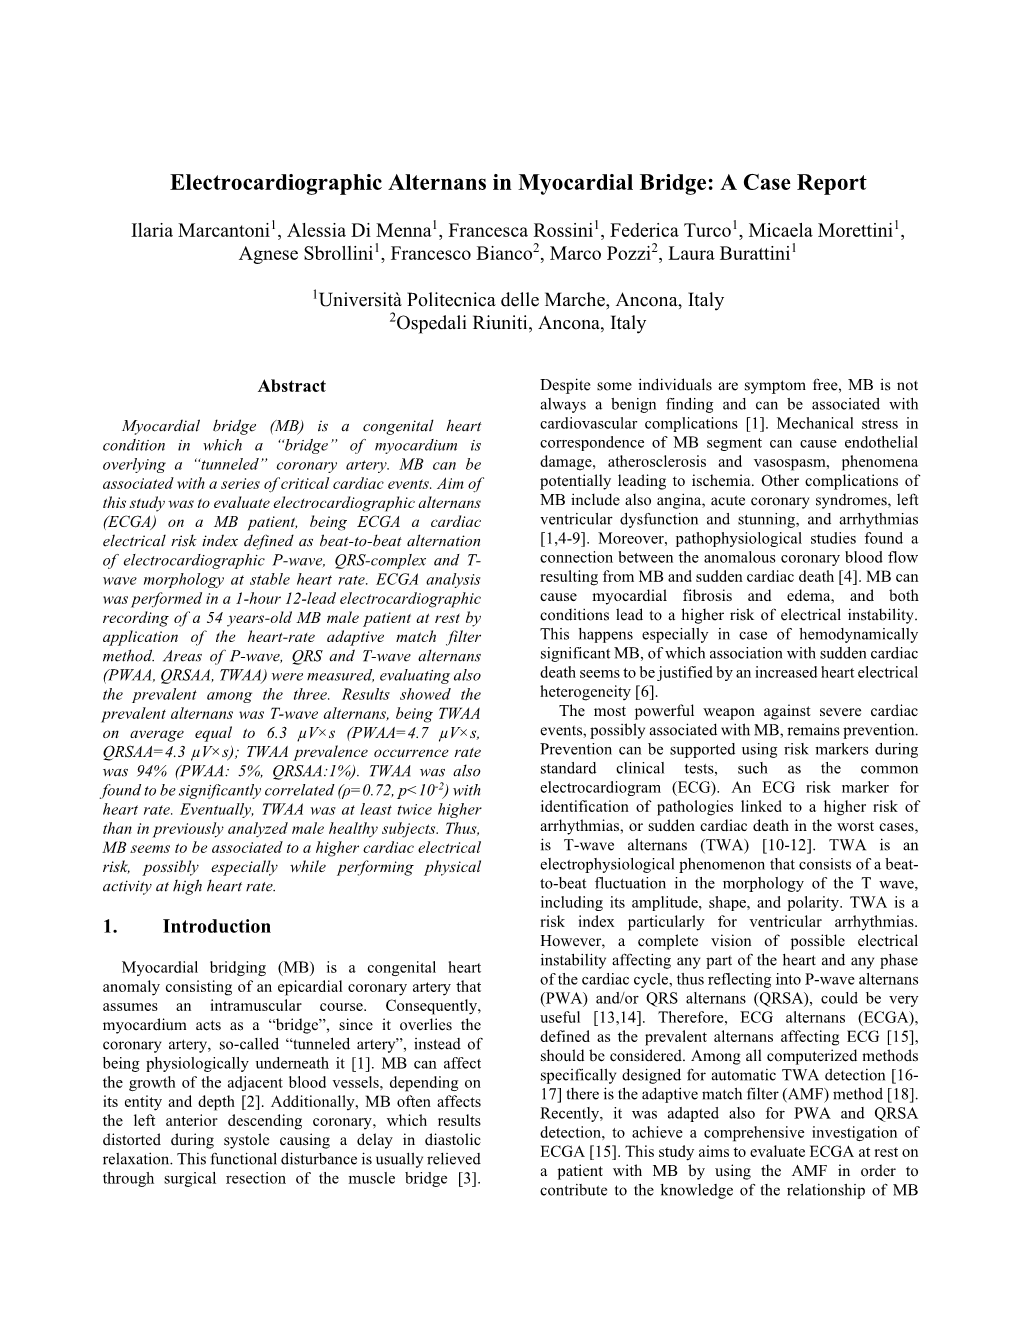 Electrocardiographic Alternans in Myocardial Bridge: a Case Report